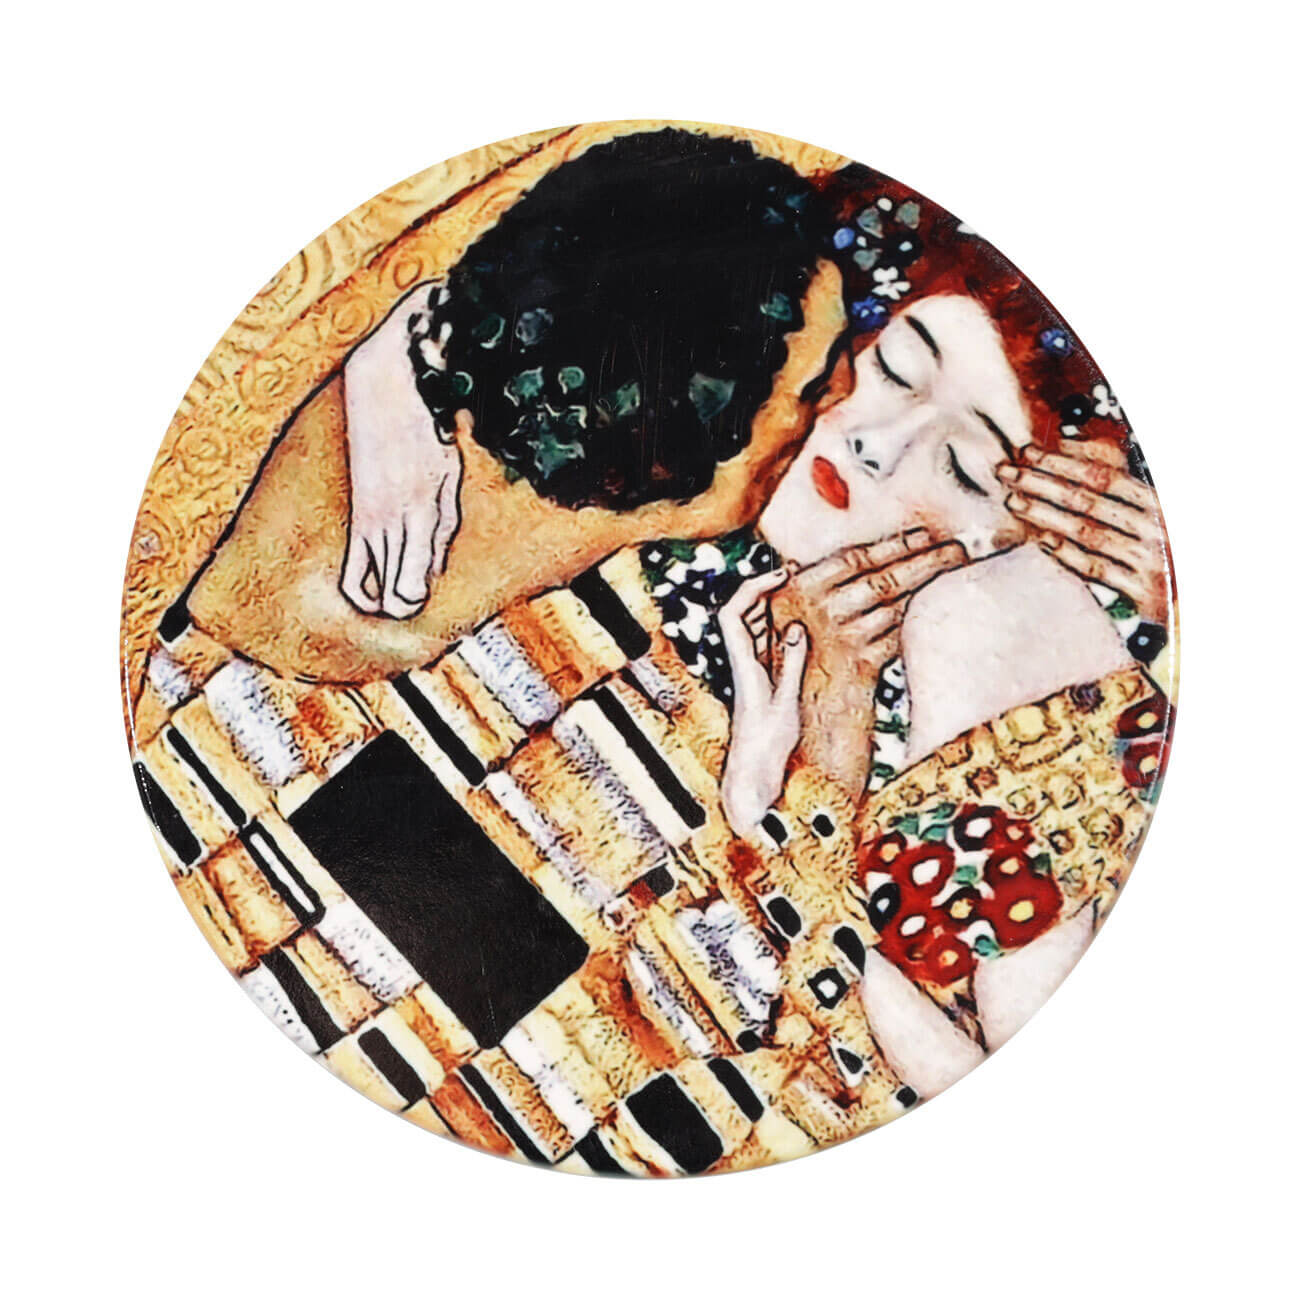 Подставка под кружку, 11 см, керамика/пробка, круглая, Климт, Поцелуй, Art поцелуй изображение № 1